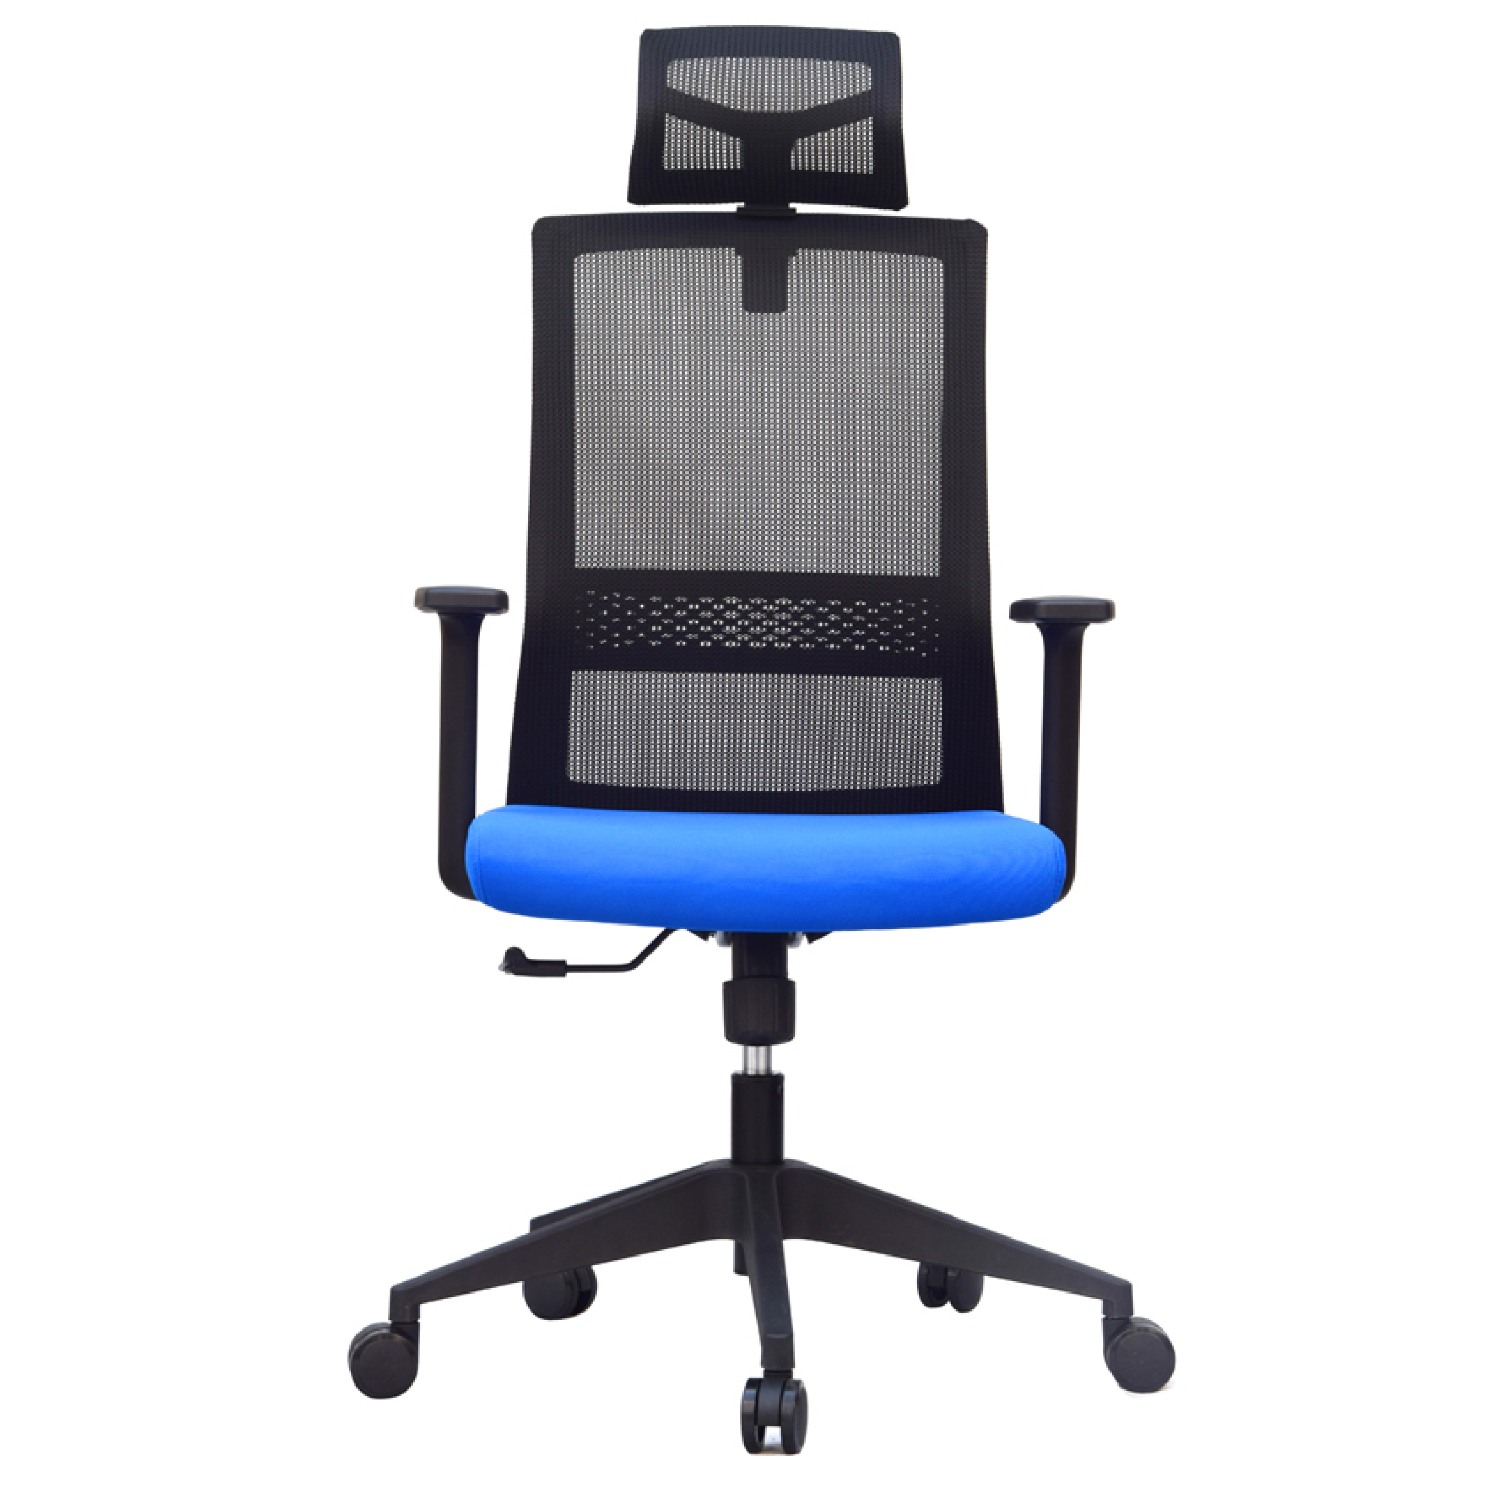 Mesh chair—SK3137